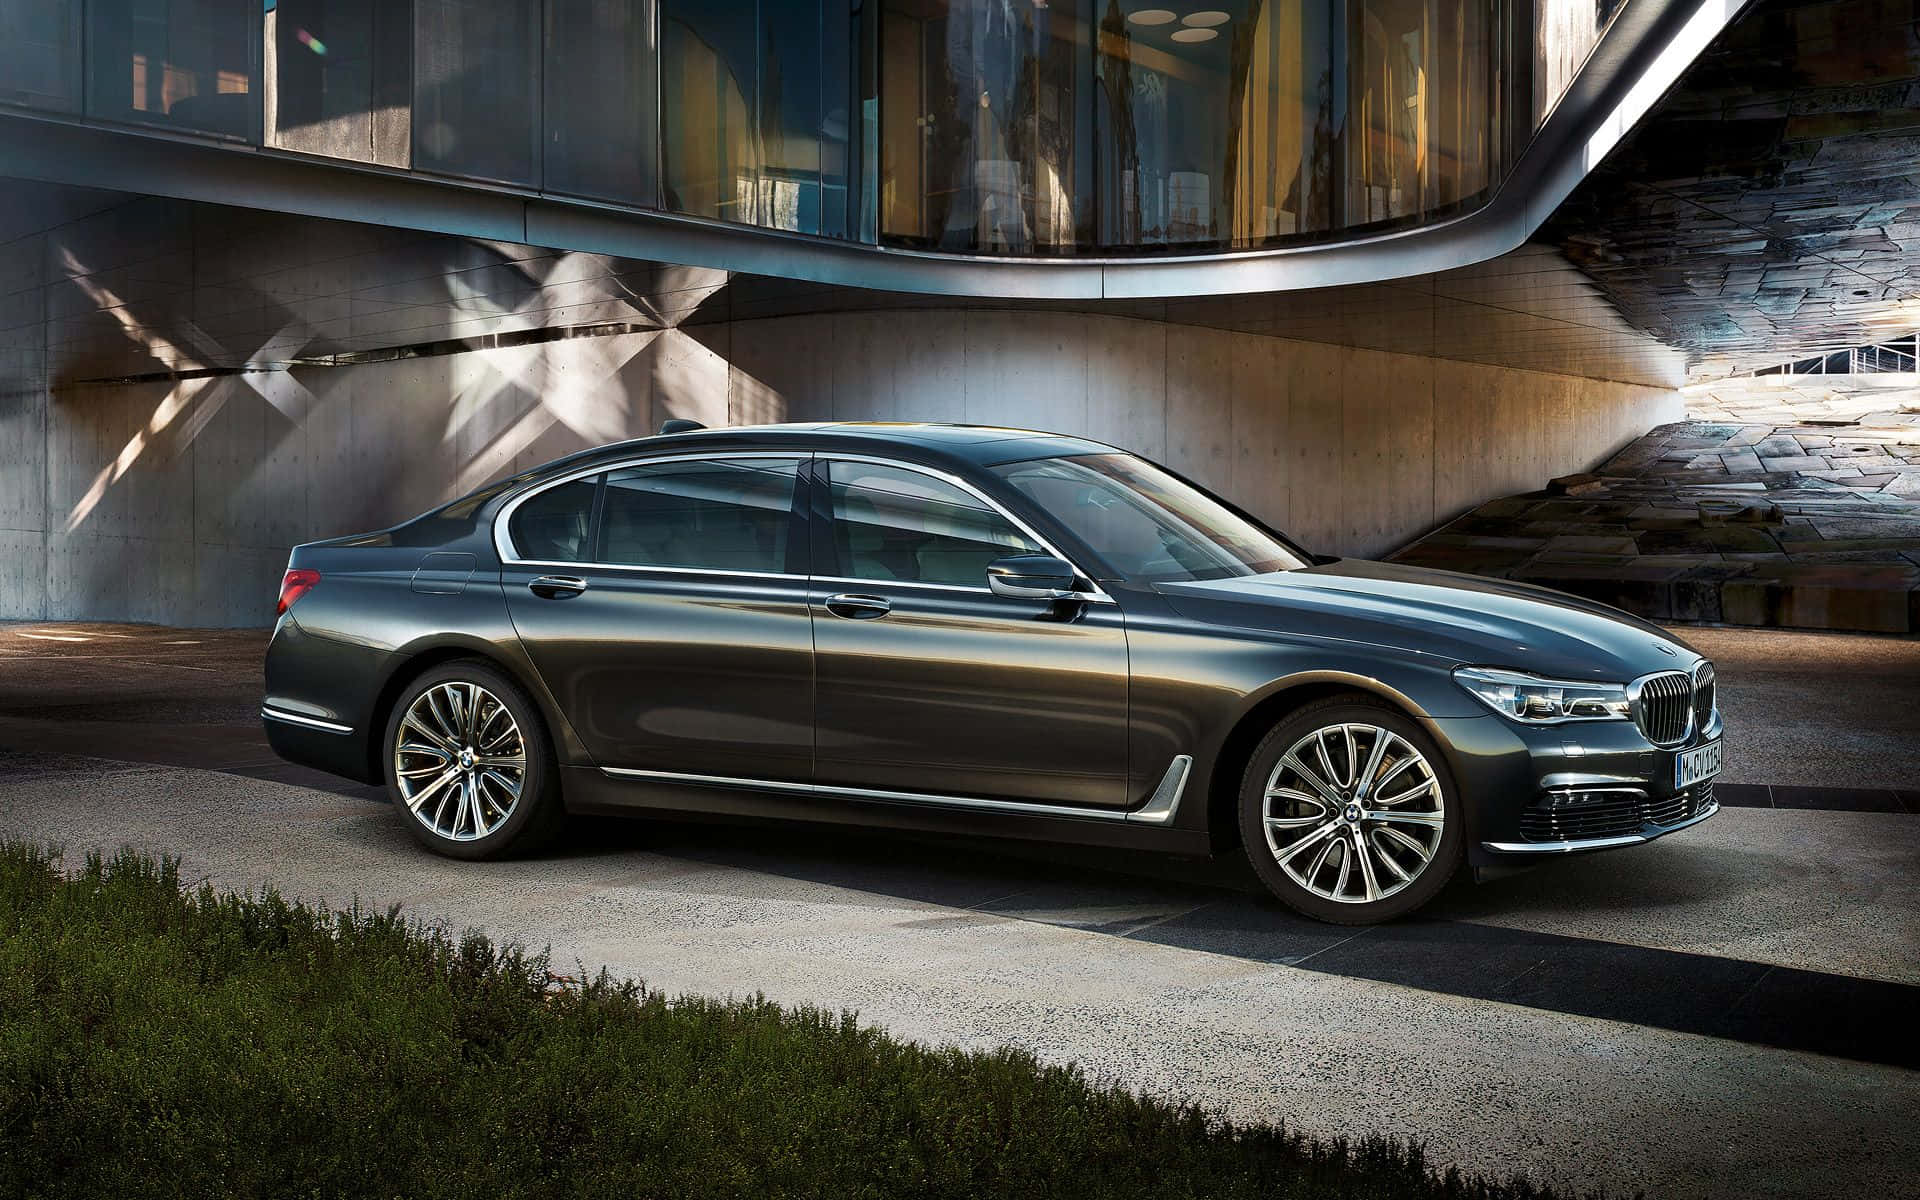 Sleek BMW 7 Series Luxury Sedan Wallpaper